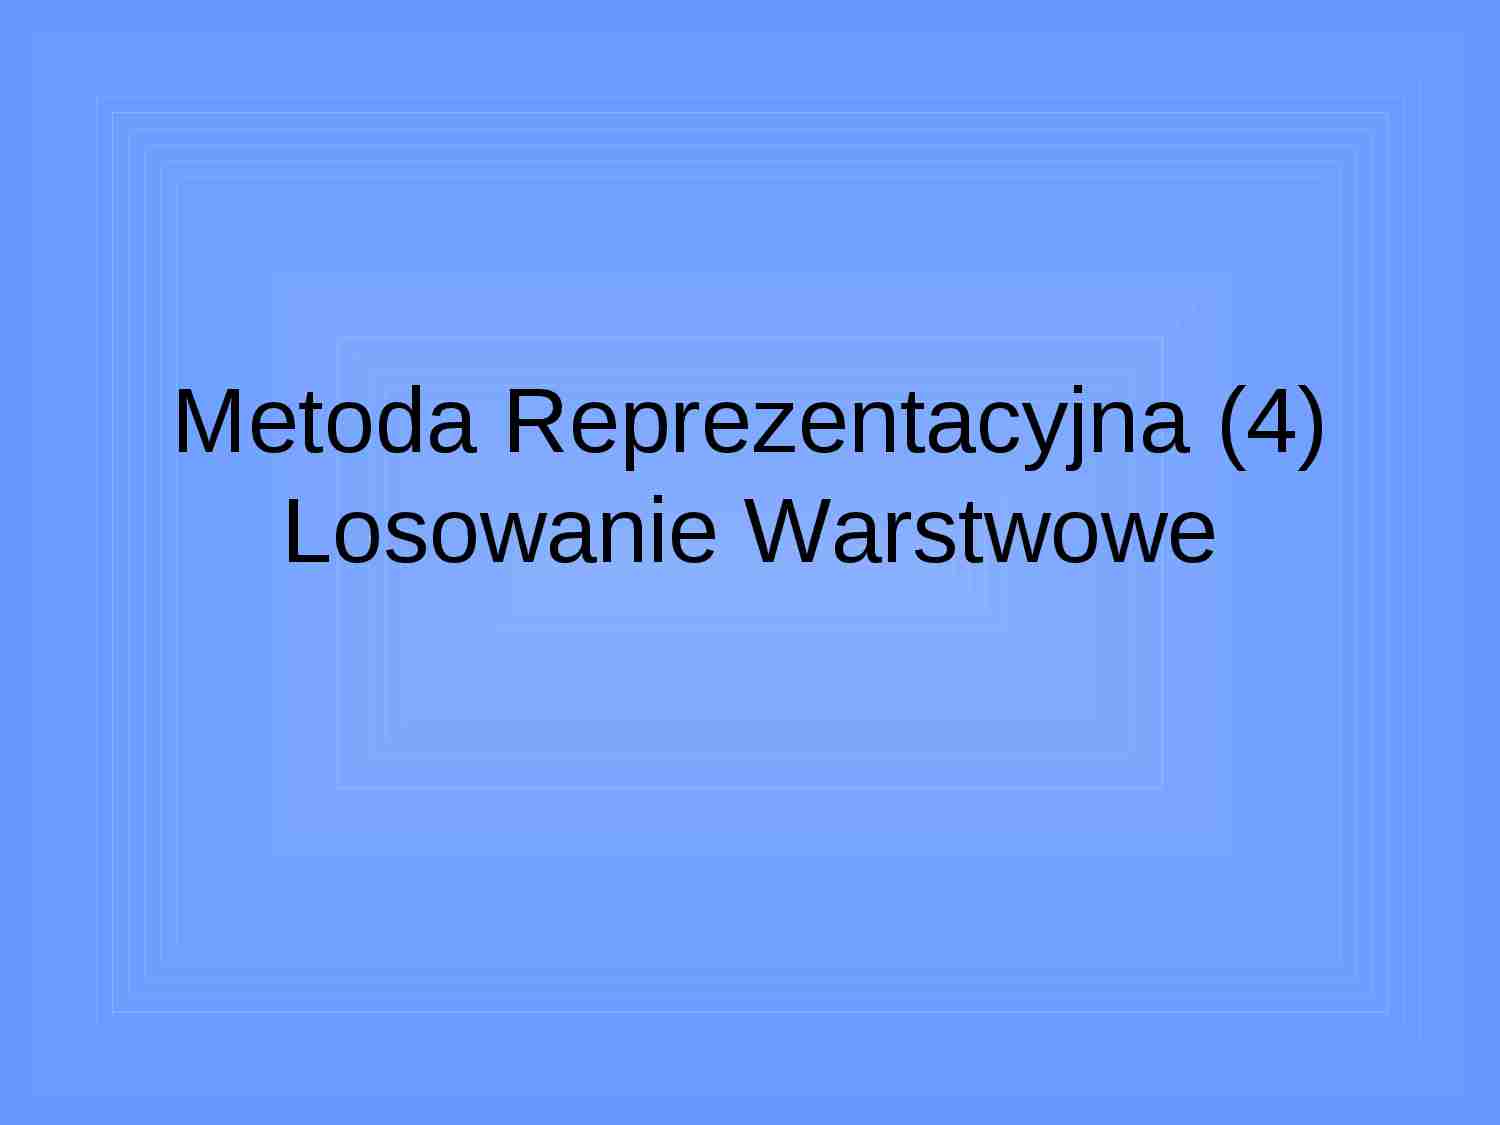 Metoda Reprezentacyjna (4) - strona 1